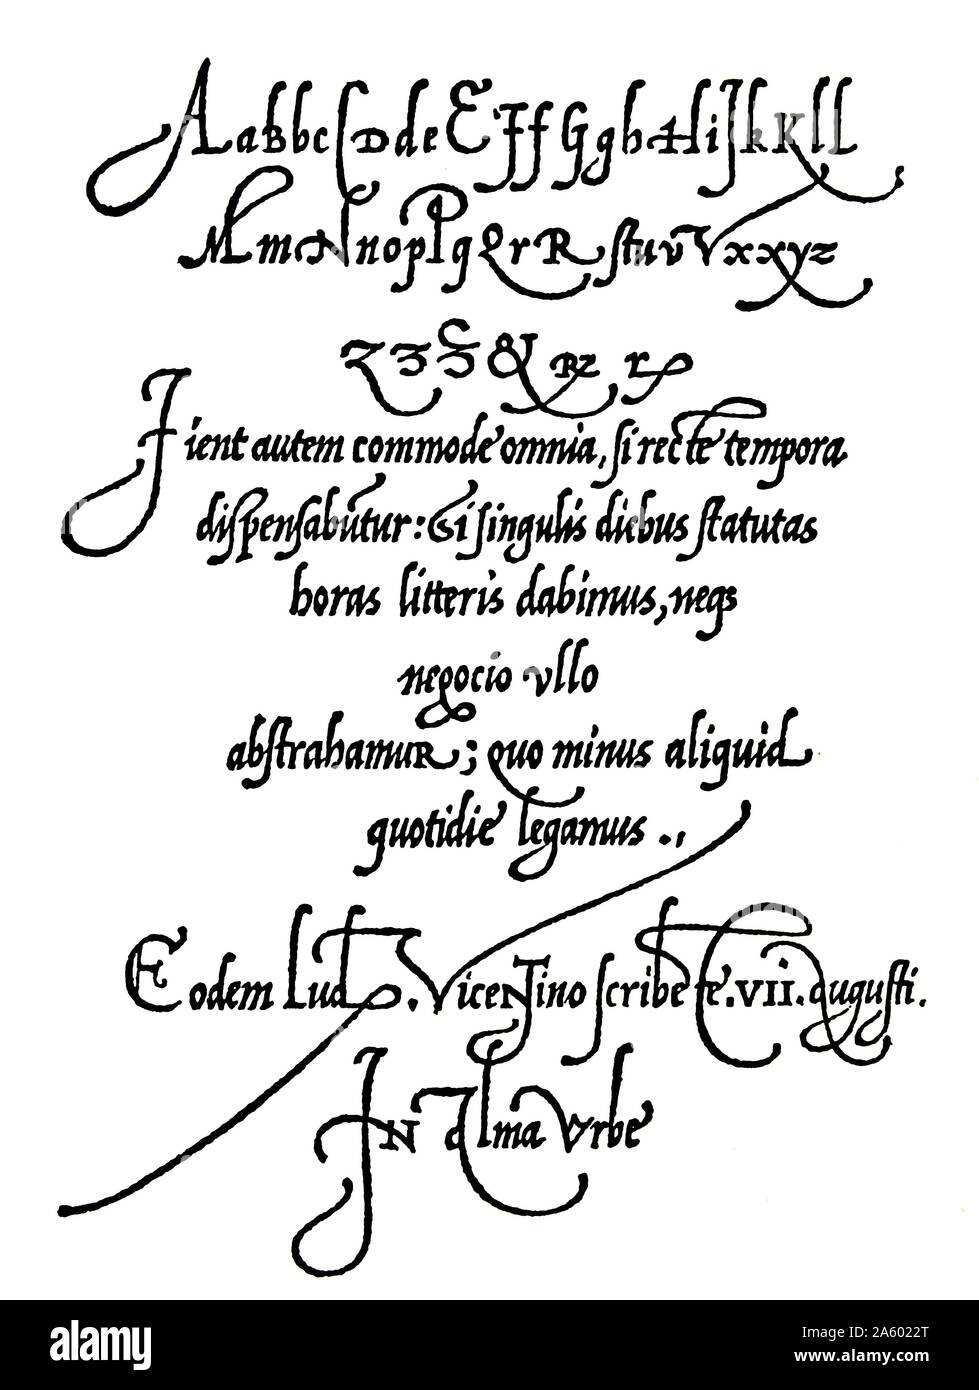 Página de Arrighi la Operina escrito manual de 1539 mostrando estilos de escritura a mano del siglo 16, principios del Renacimiento. Foto de stock